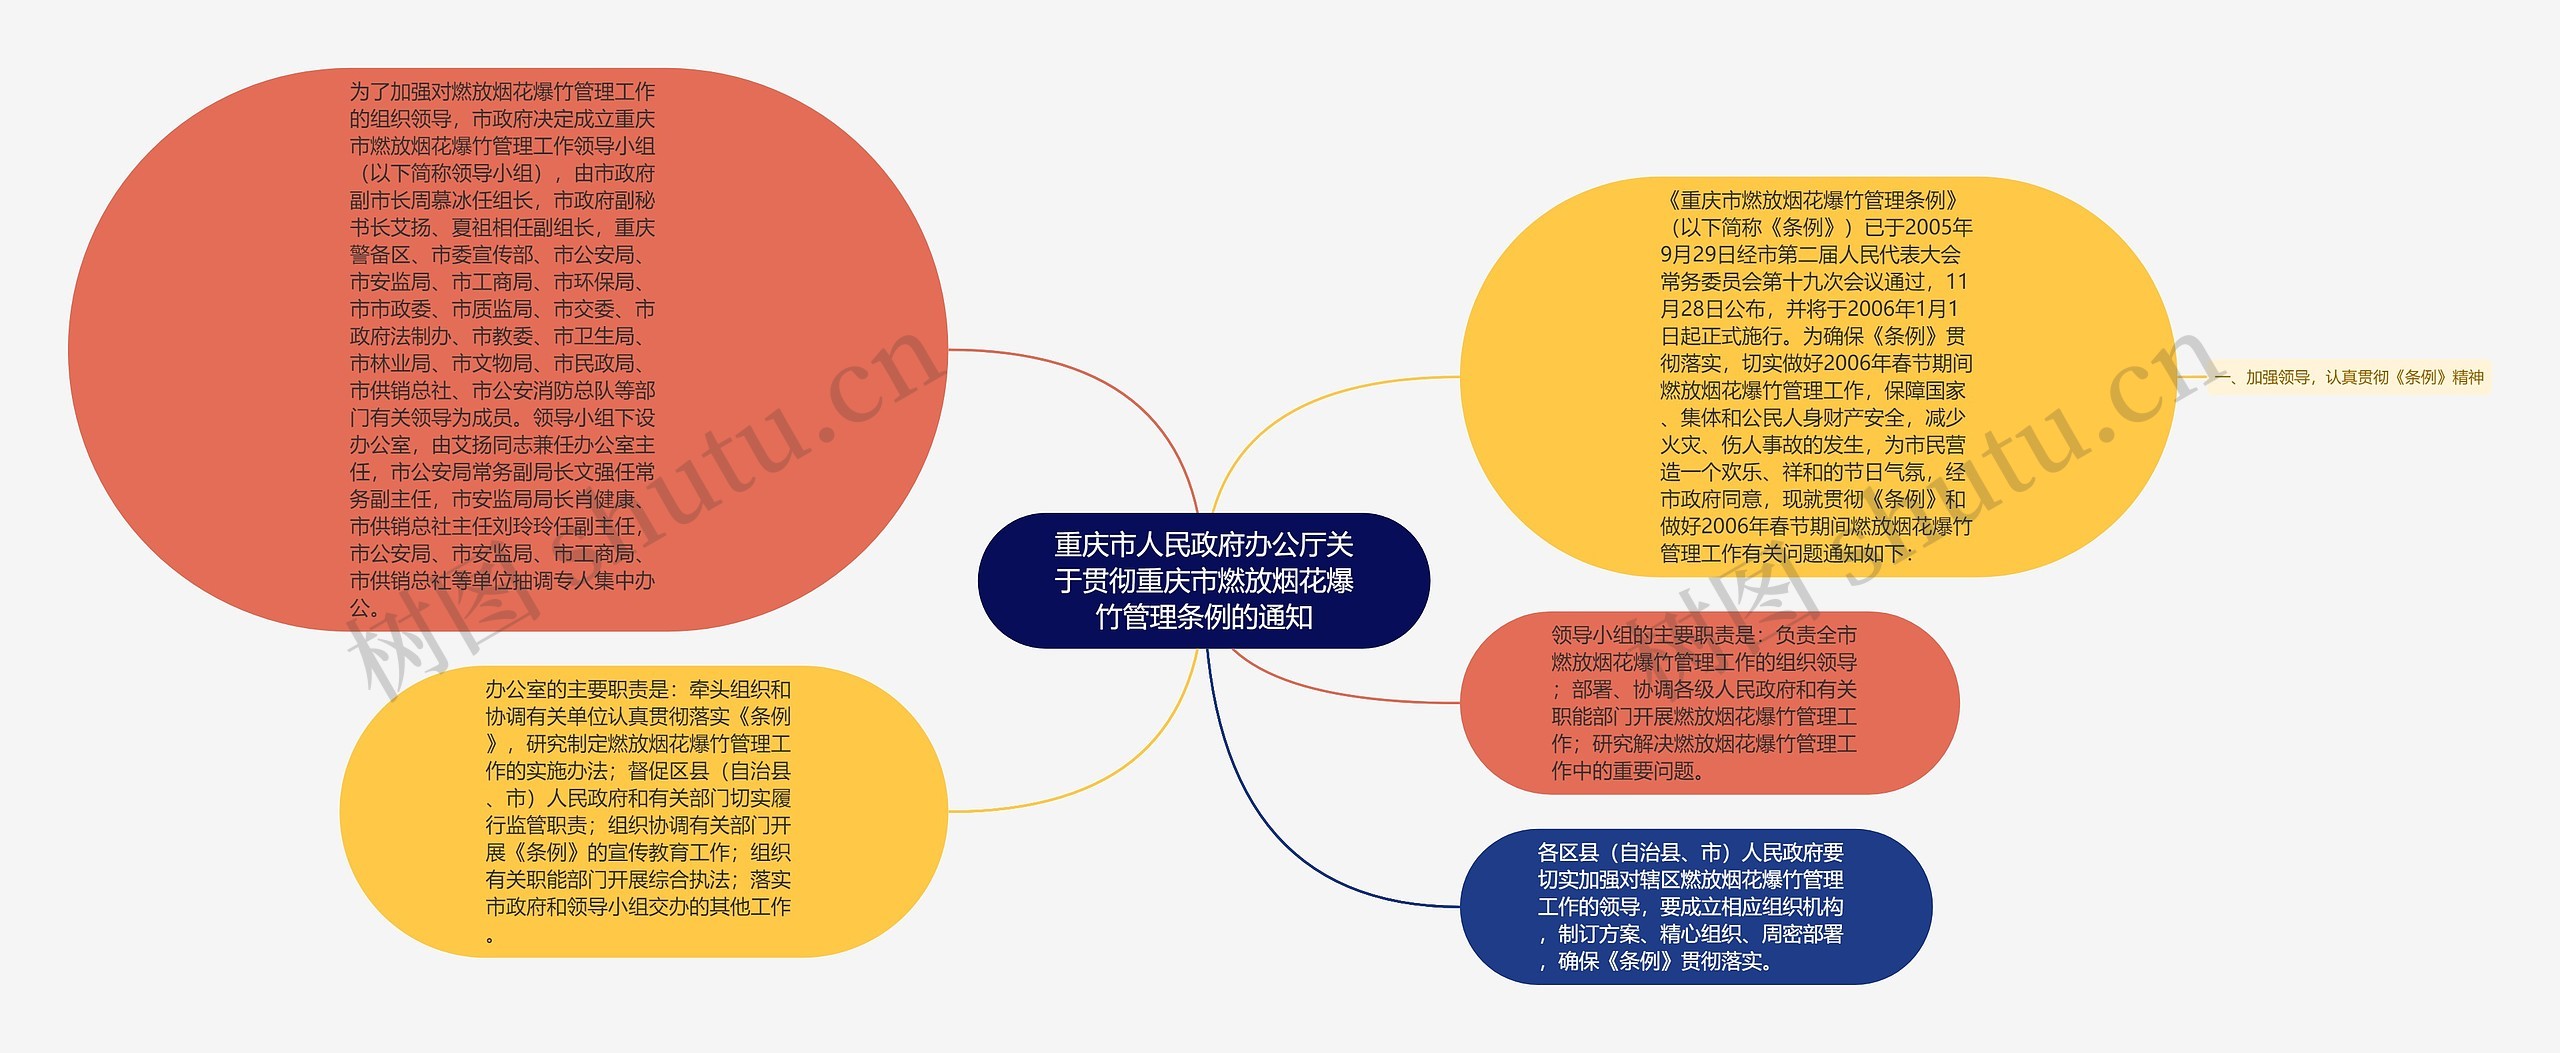 重庆市人民政府办公厅关于贯彻重庆市燃放烟花爆竹管理条例的通知思维导图